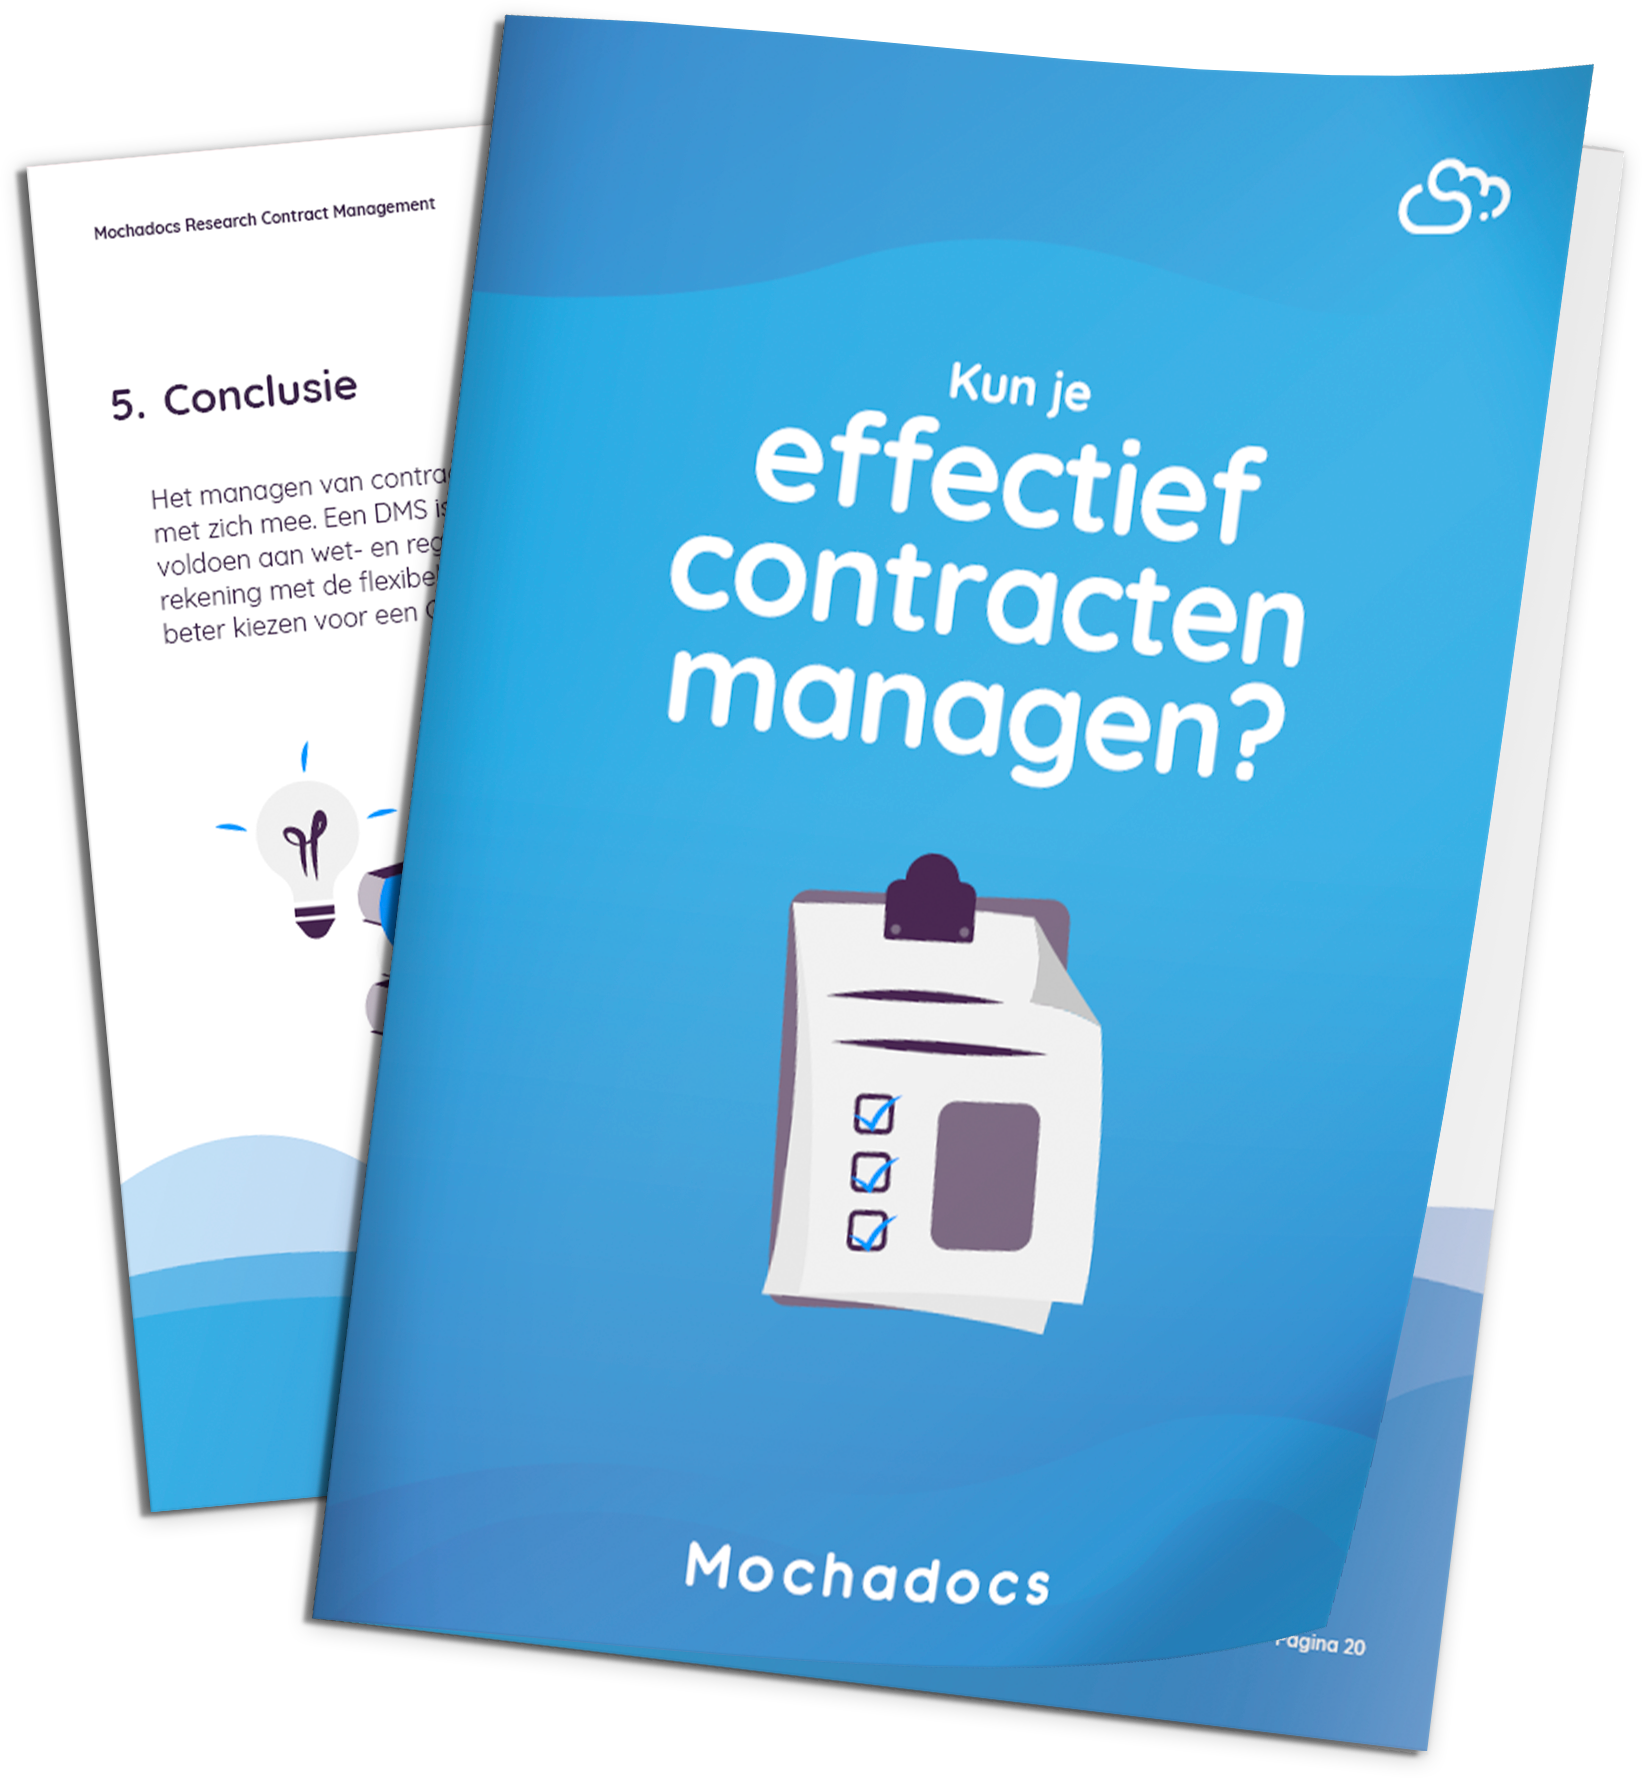 Mochadocs - Contract Management - eBook - Kun je effectief contracten managen in een Document Management Systeem?